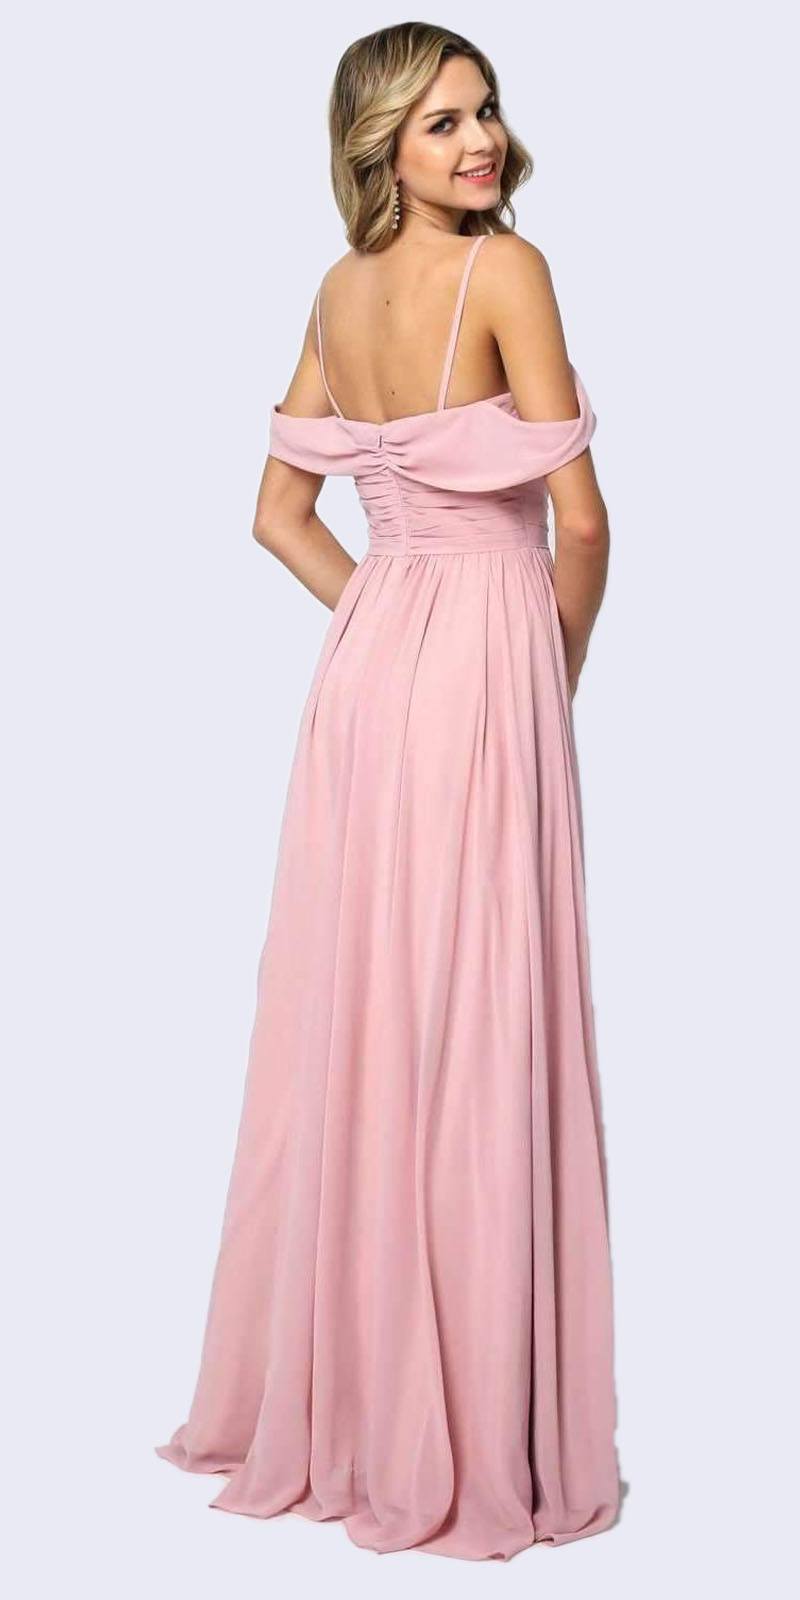 Juliet 676 Floor Length Dusty Rose Cold-Shoulder Semi Formal A-line Dress